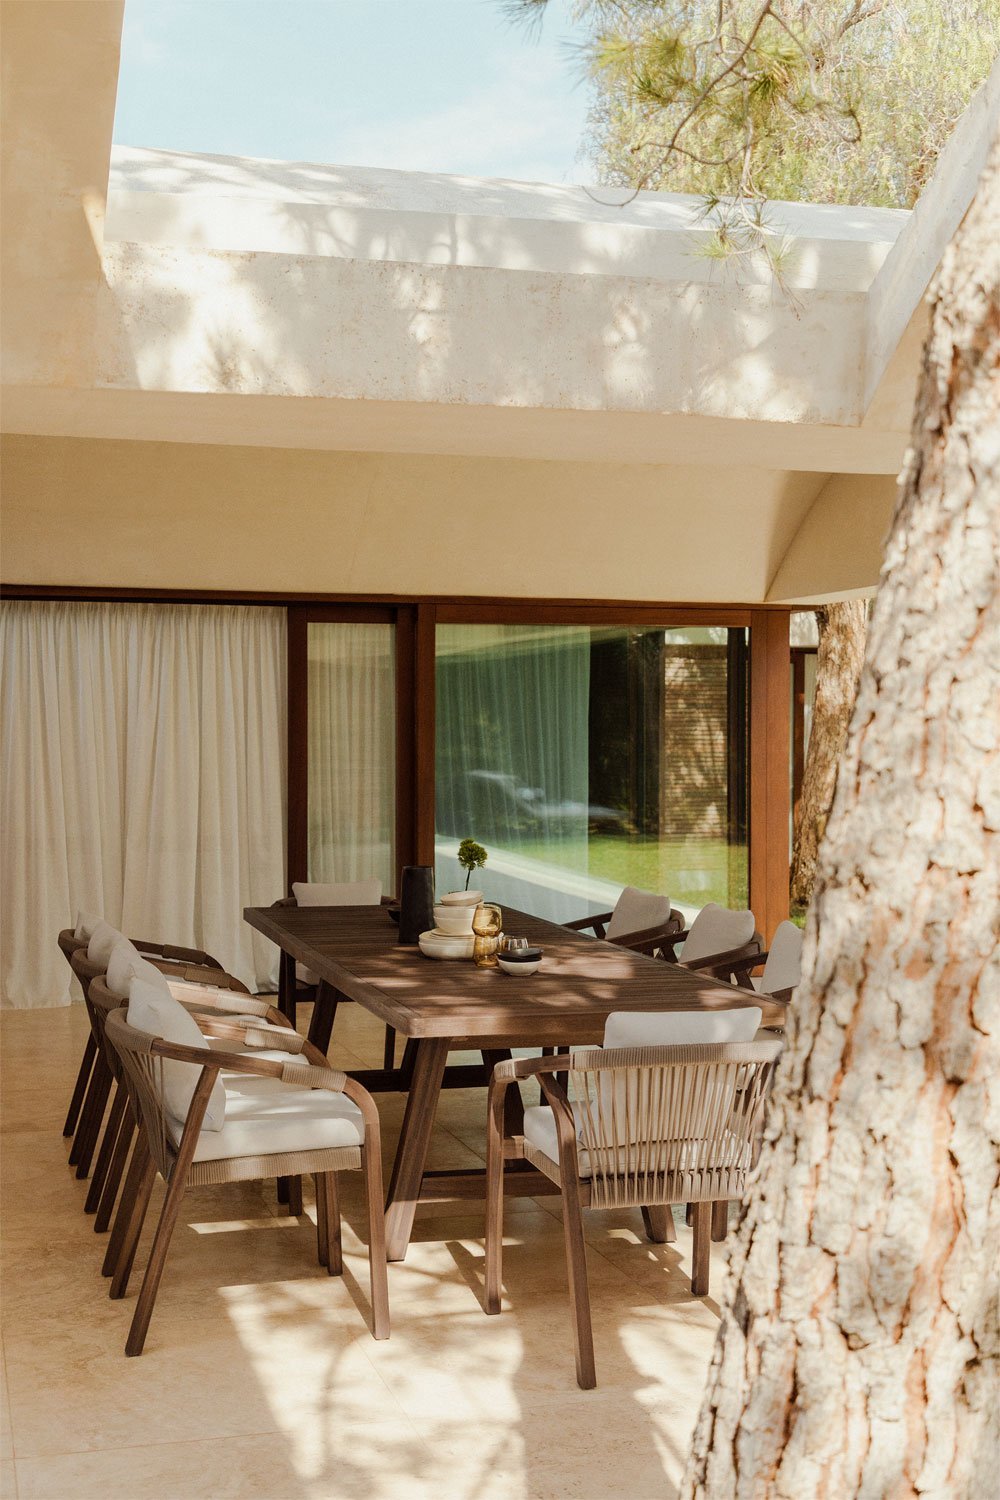 Rechthoekige uitschuifbare tafelset (200-300x100 cm) en 10 tuinstoelen met armleuningen in Dubai acaciahout, galerij beeld 1